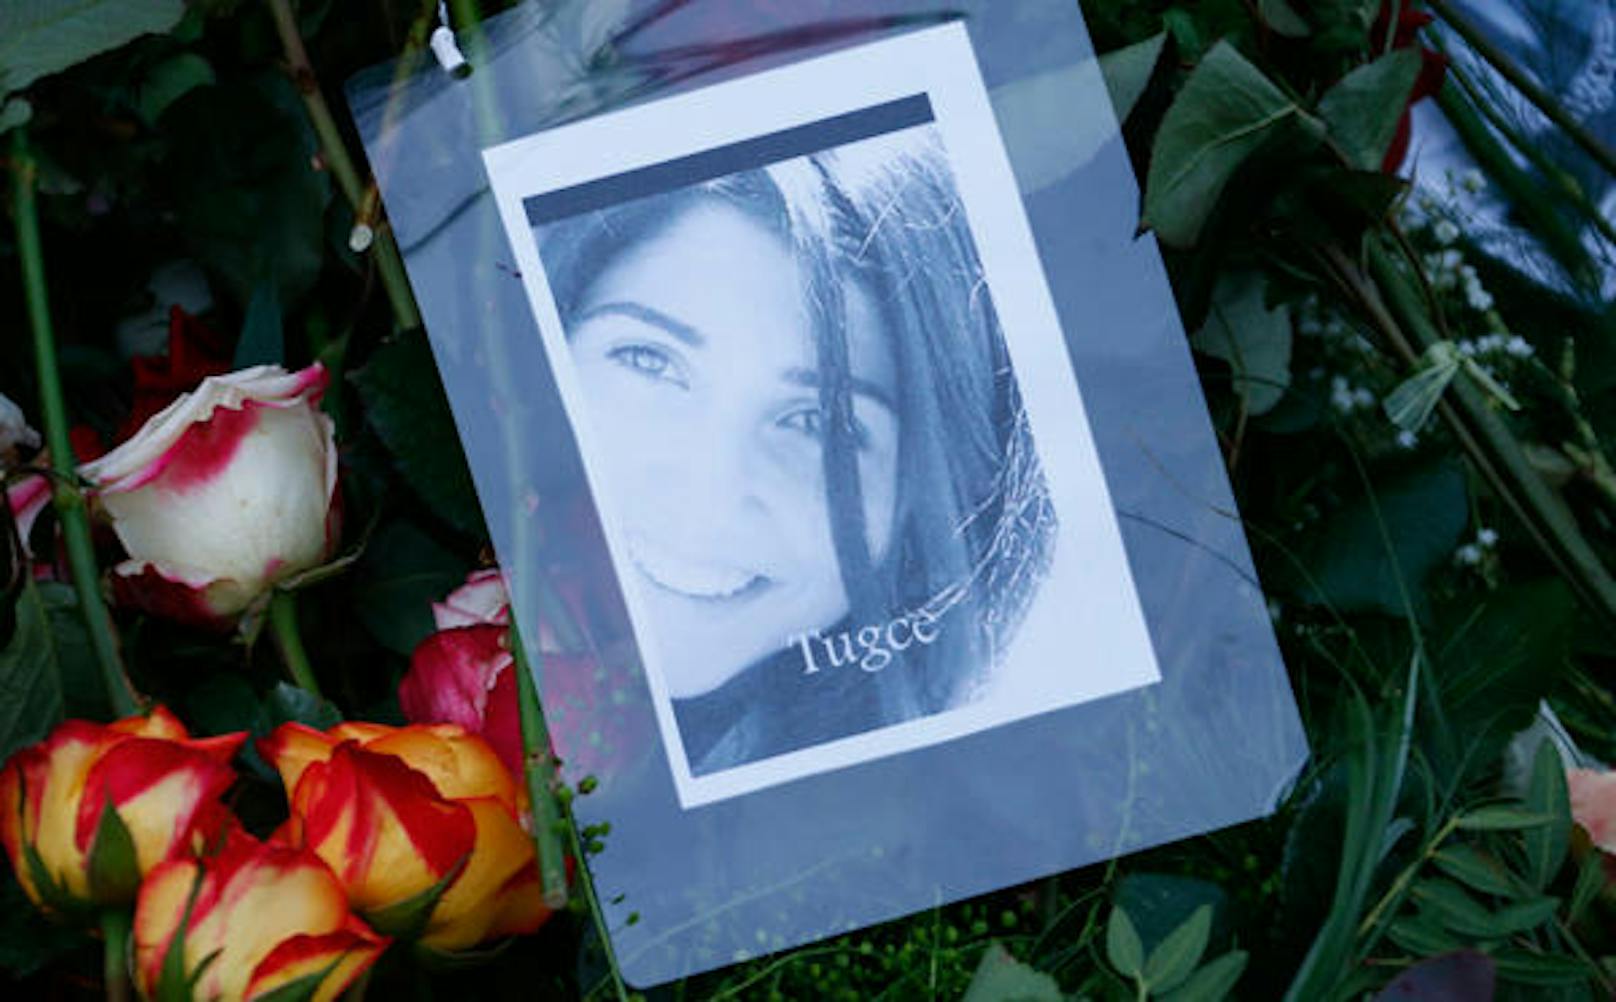 Tugce Albayrak wurde im November 2014 auf dem Parkplatz eines Fast-Food-Restaurants in Offenbach von Sanel M. so heftig geschlagen, dass sie auf den Kopf fiel und wenige Tage später verstarb.